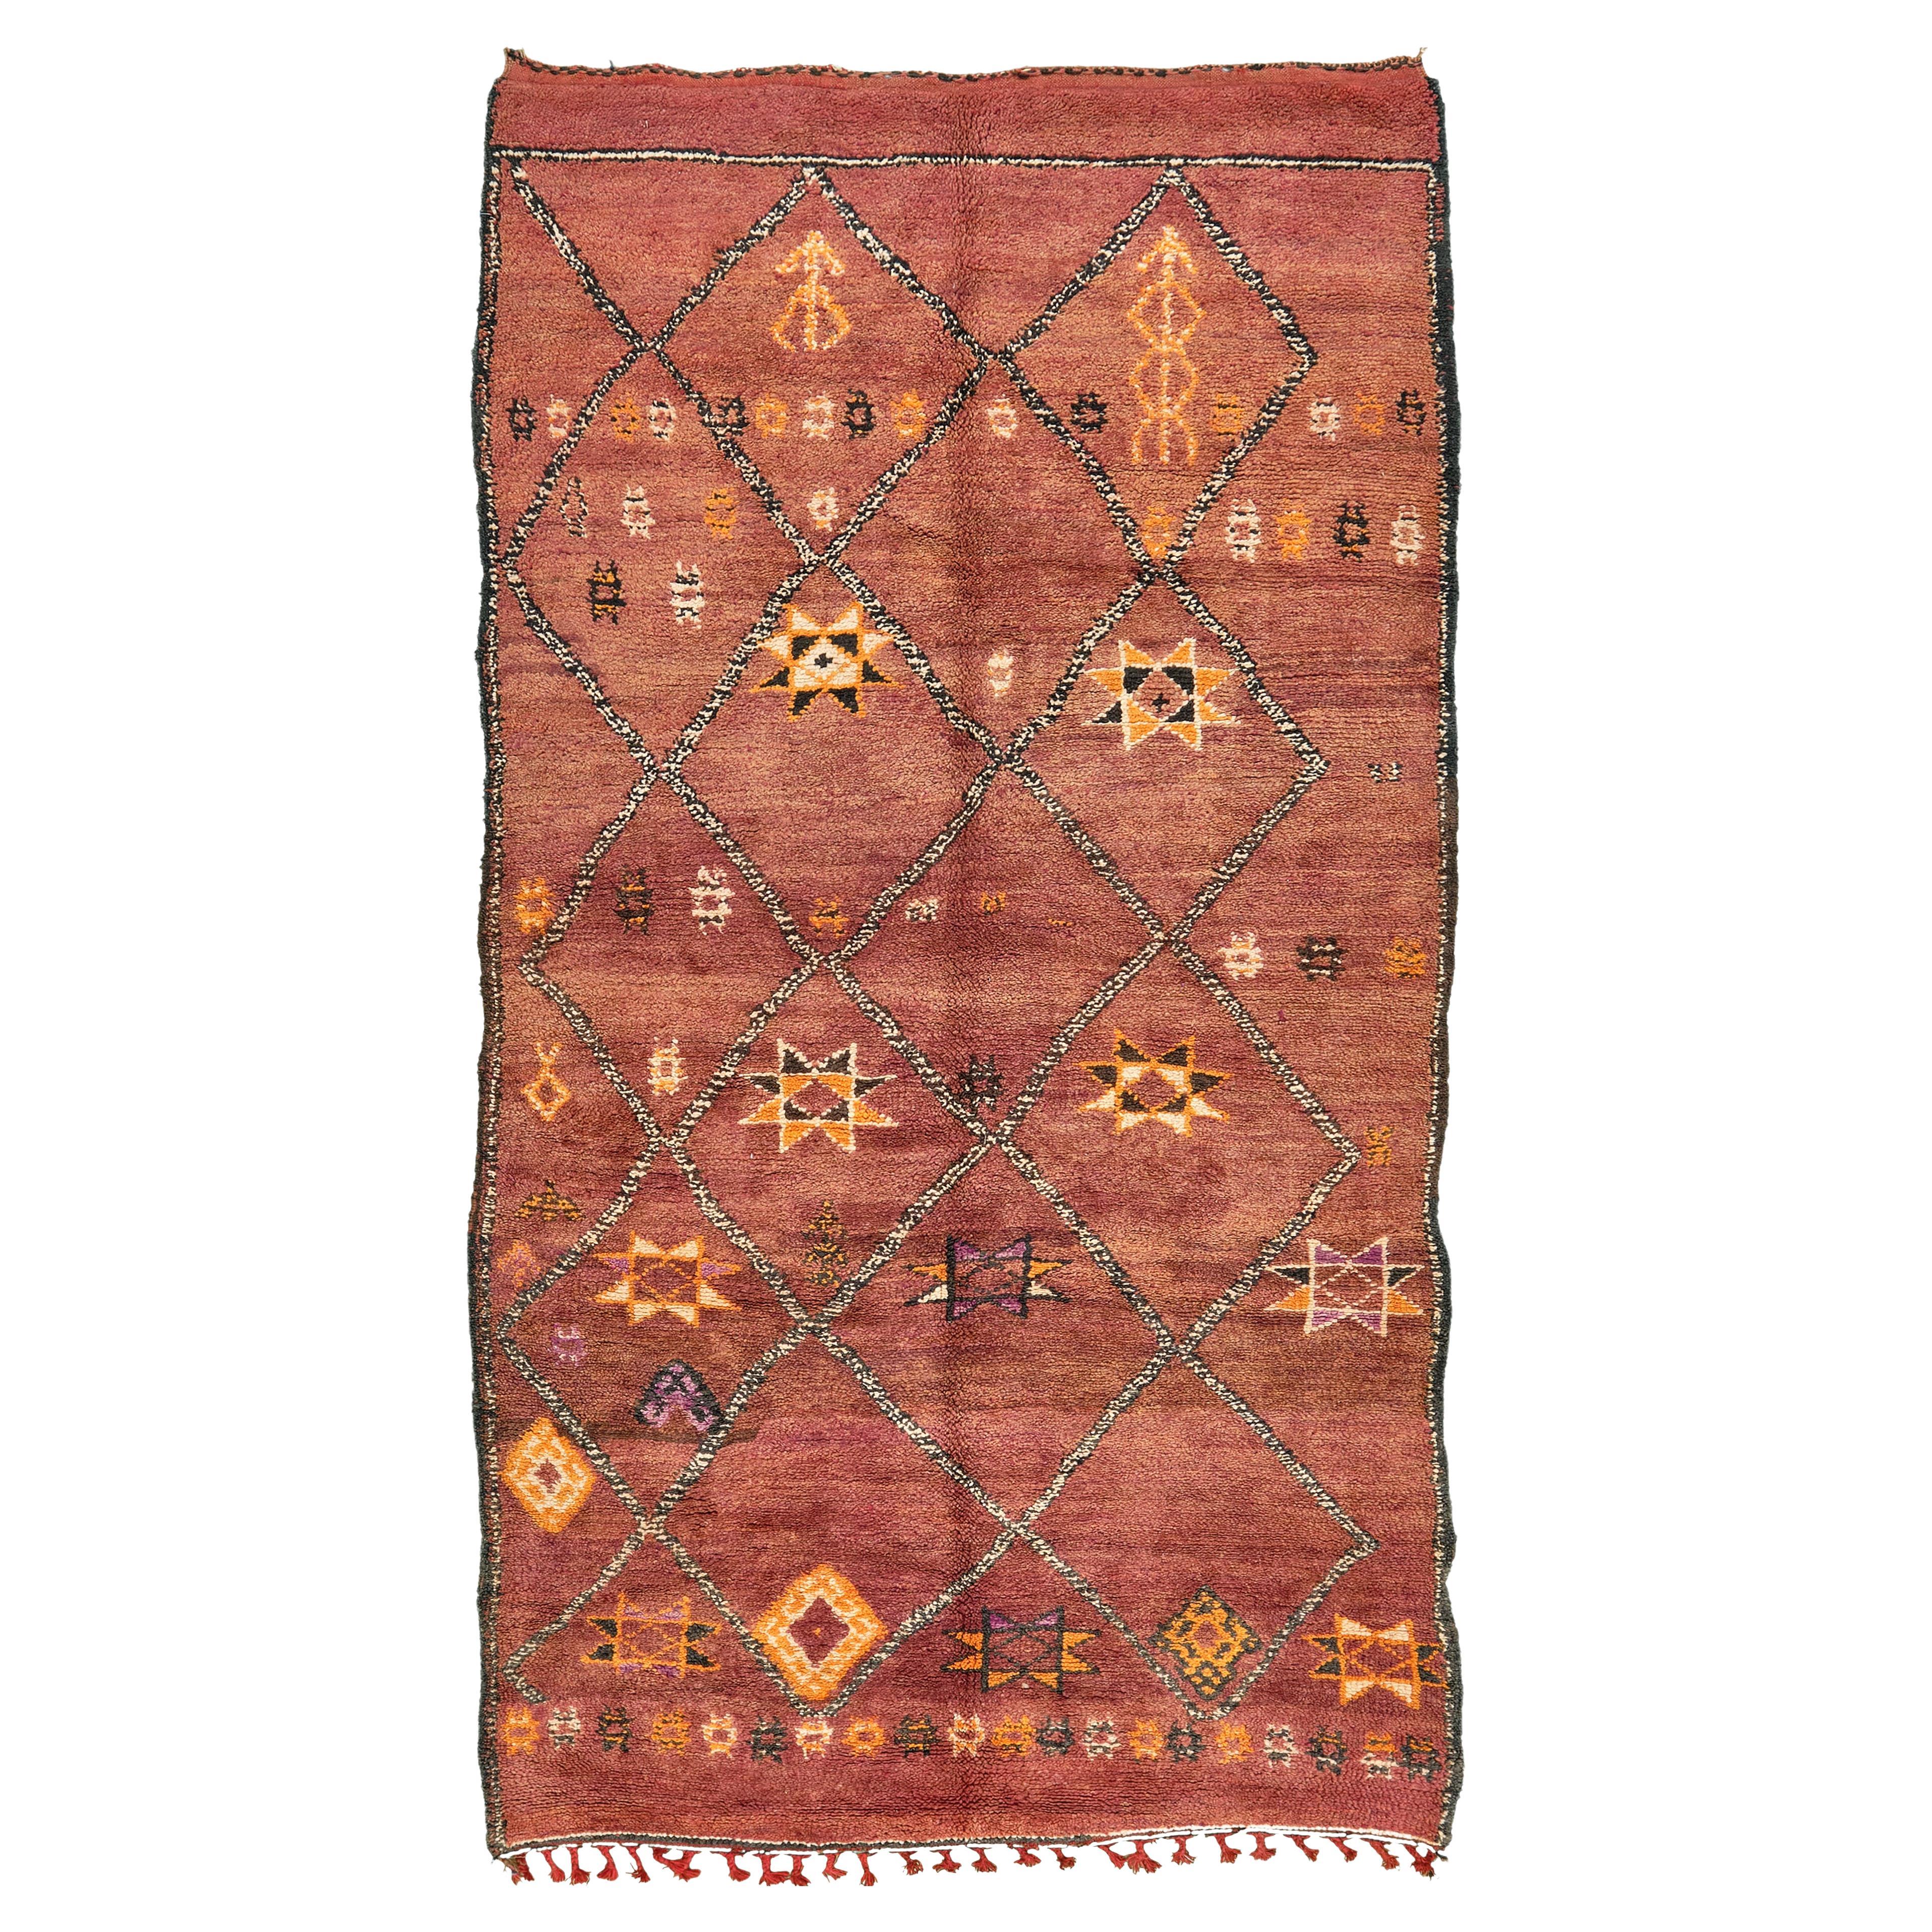 Marokkanischer marokkanischer Teppich aus der Atlas-Kollektion des Stammes Atlas